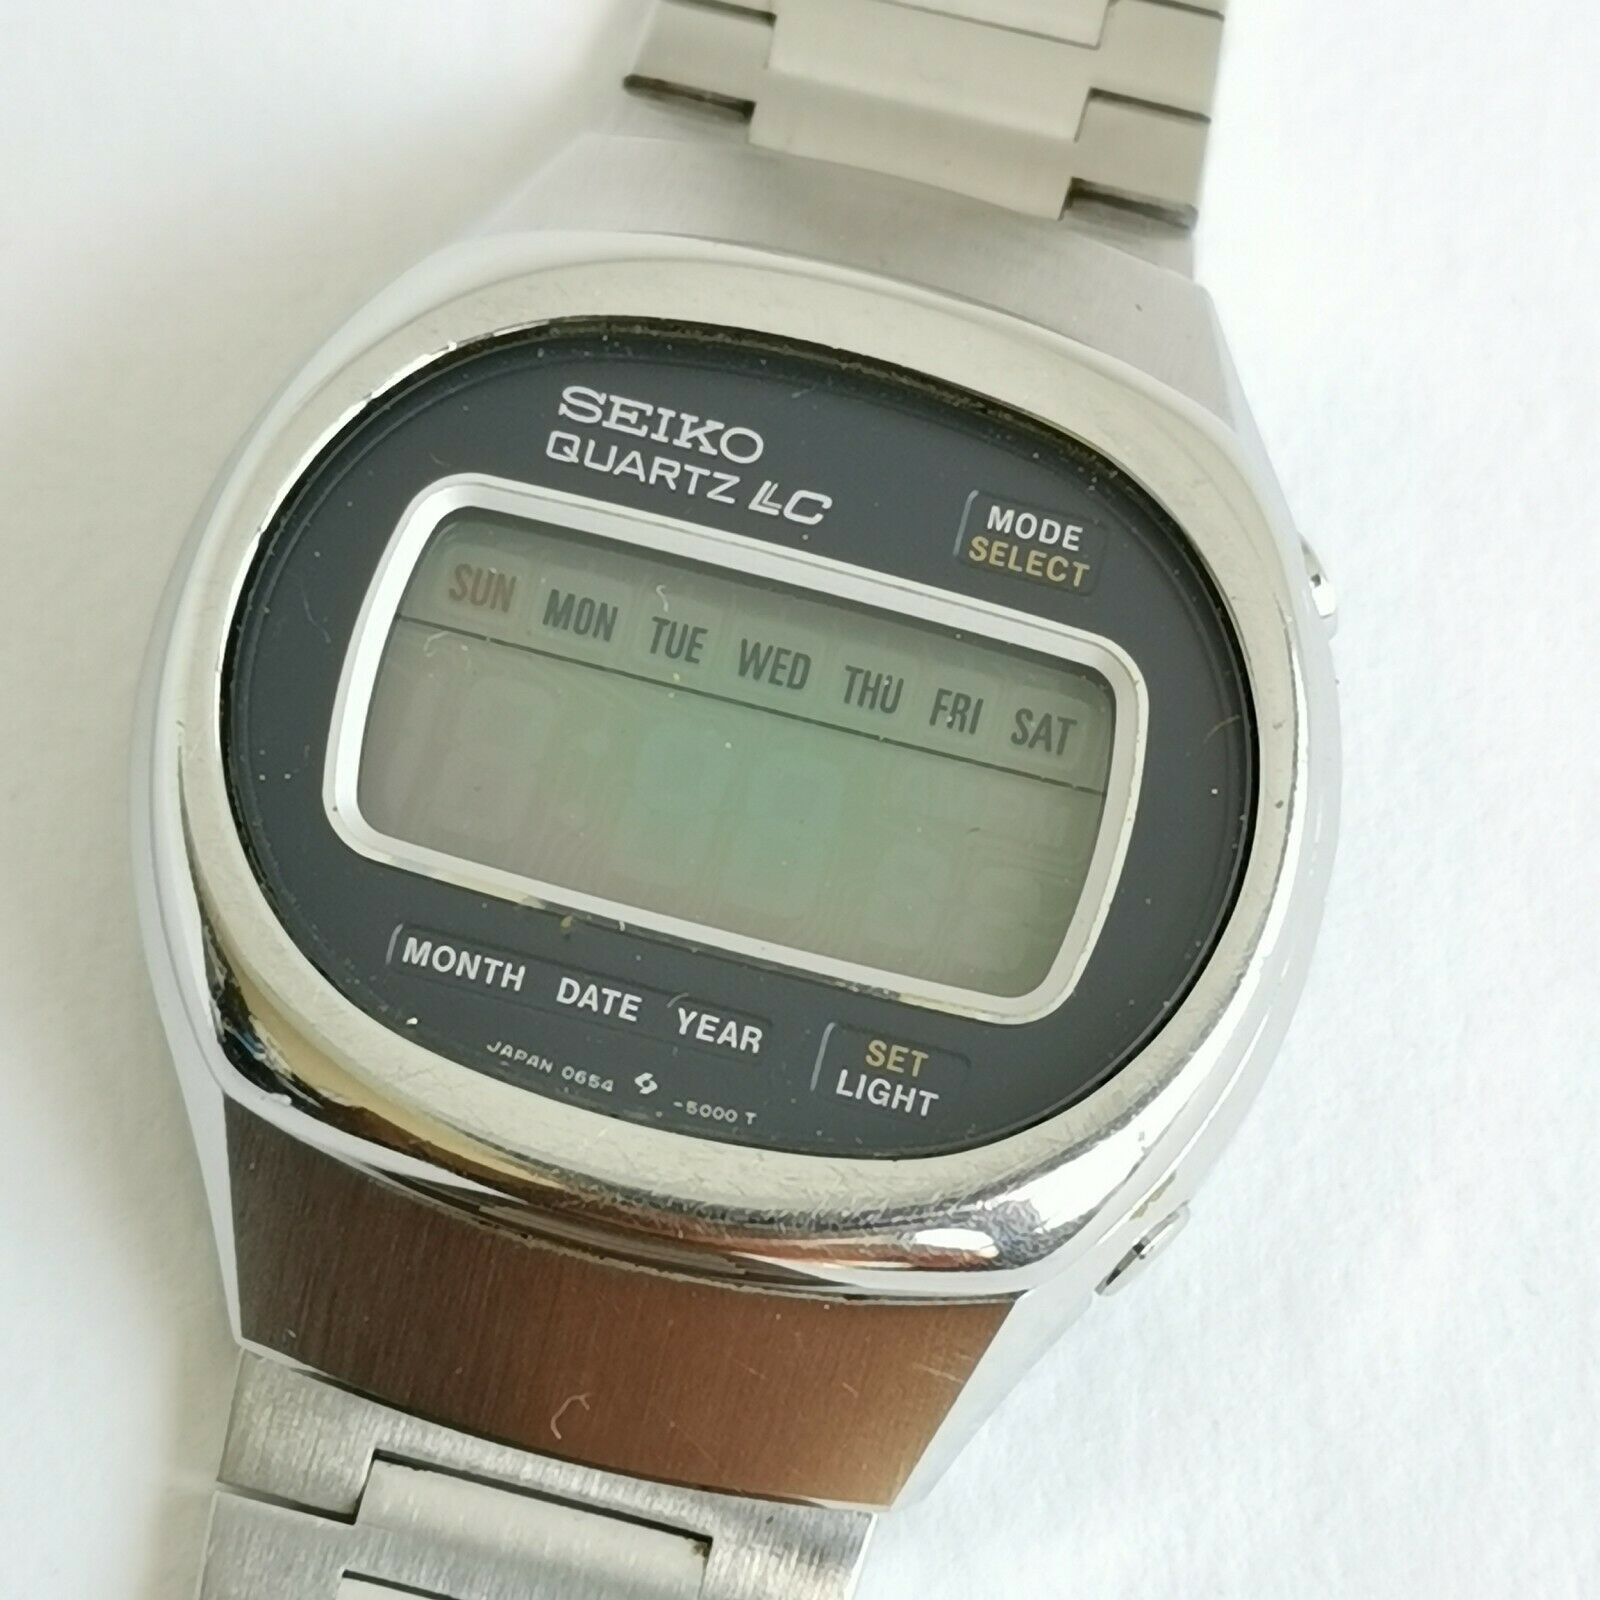 SEIKO QUARTZ LC 0654-5000 ヴィンテージ - 時計